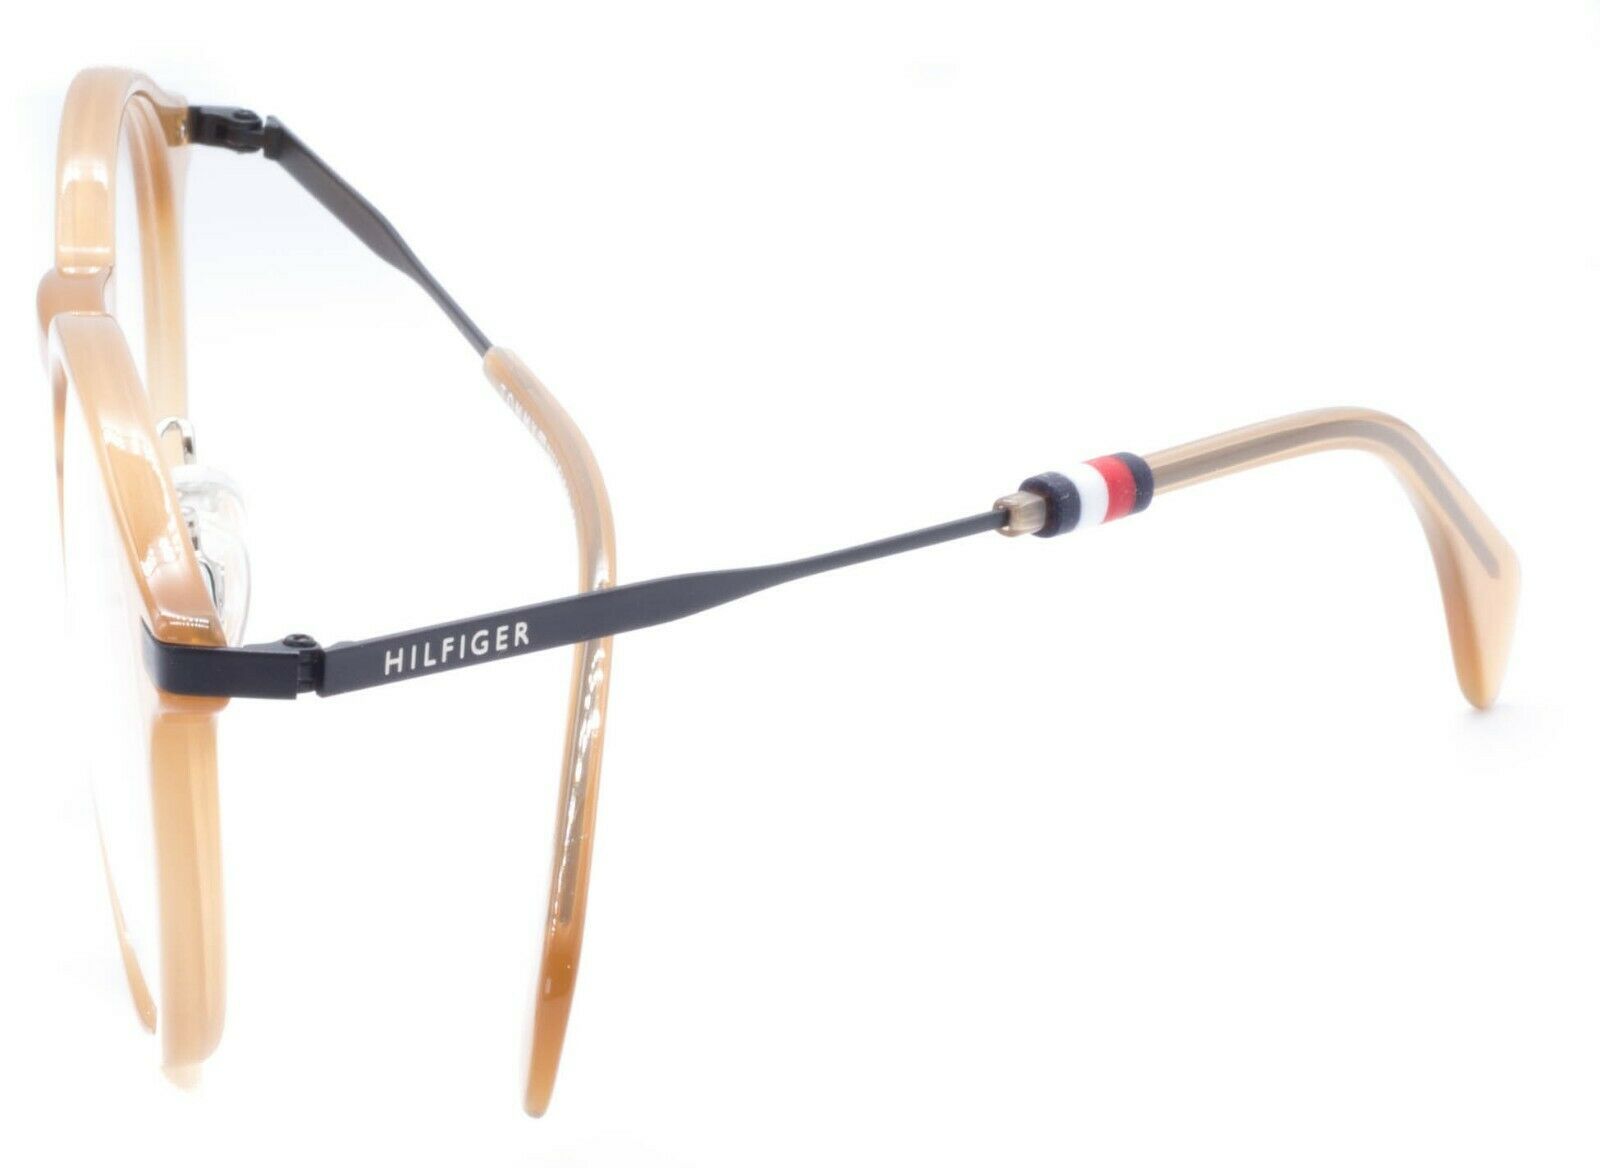 TOMMY HILFIGER TH 1504/F 40G 50mm Eyewear FRAMES Glasses RX Optical Eyeglasses